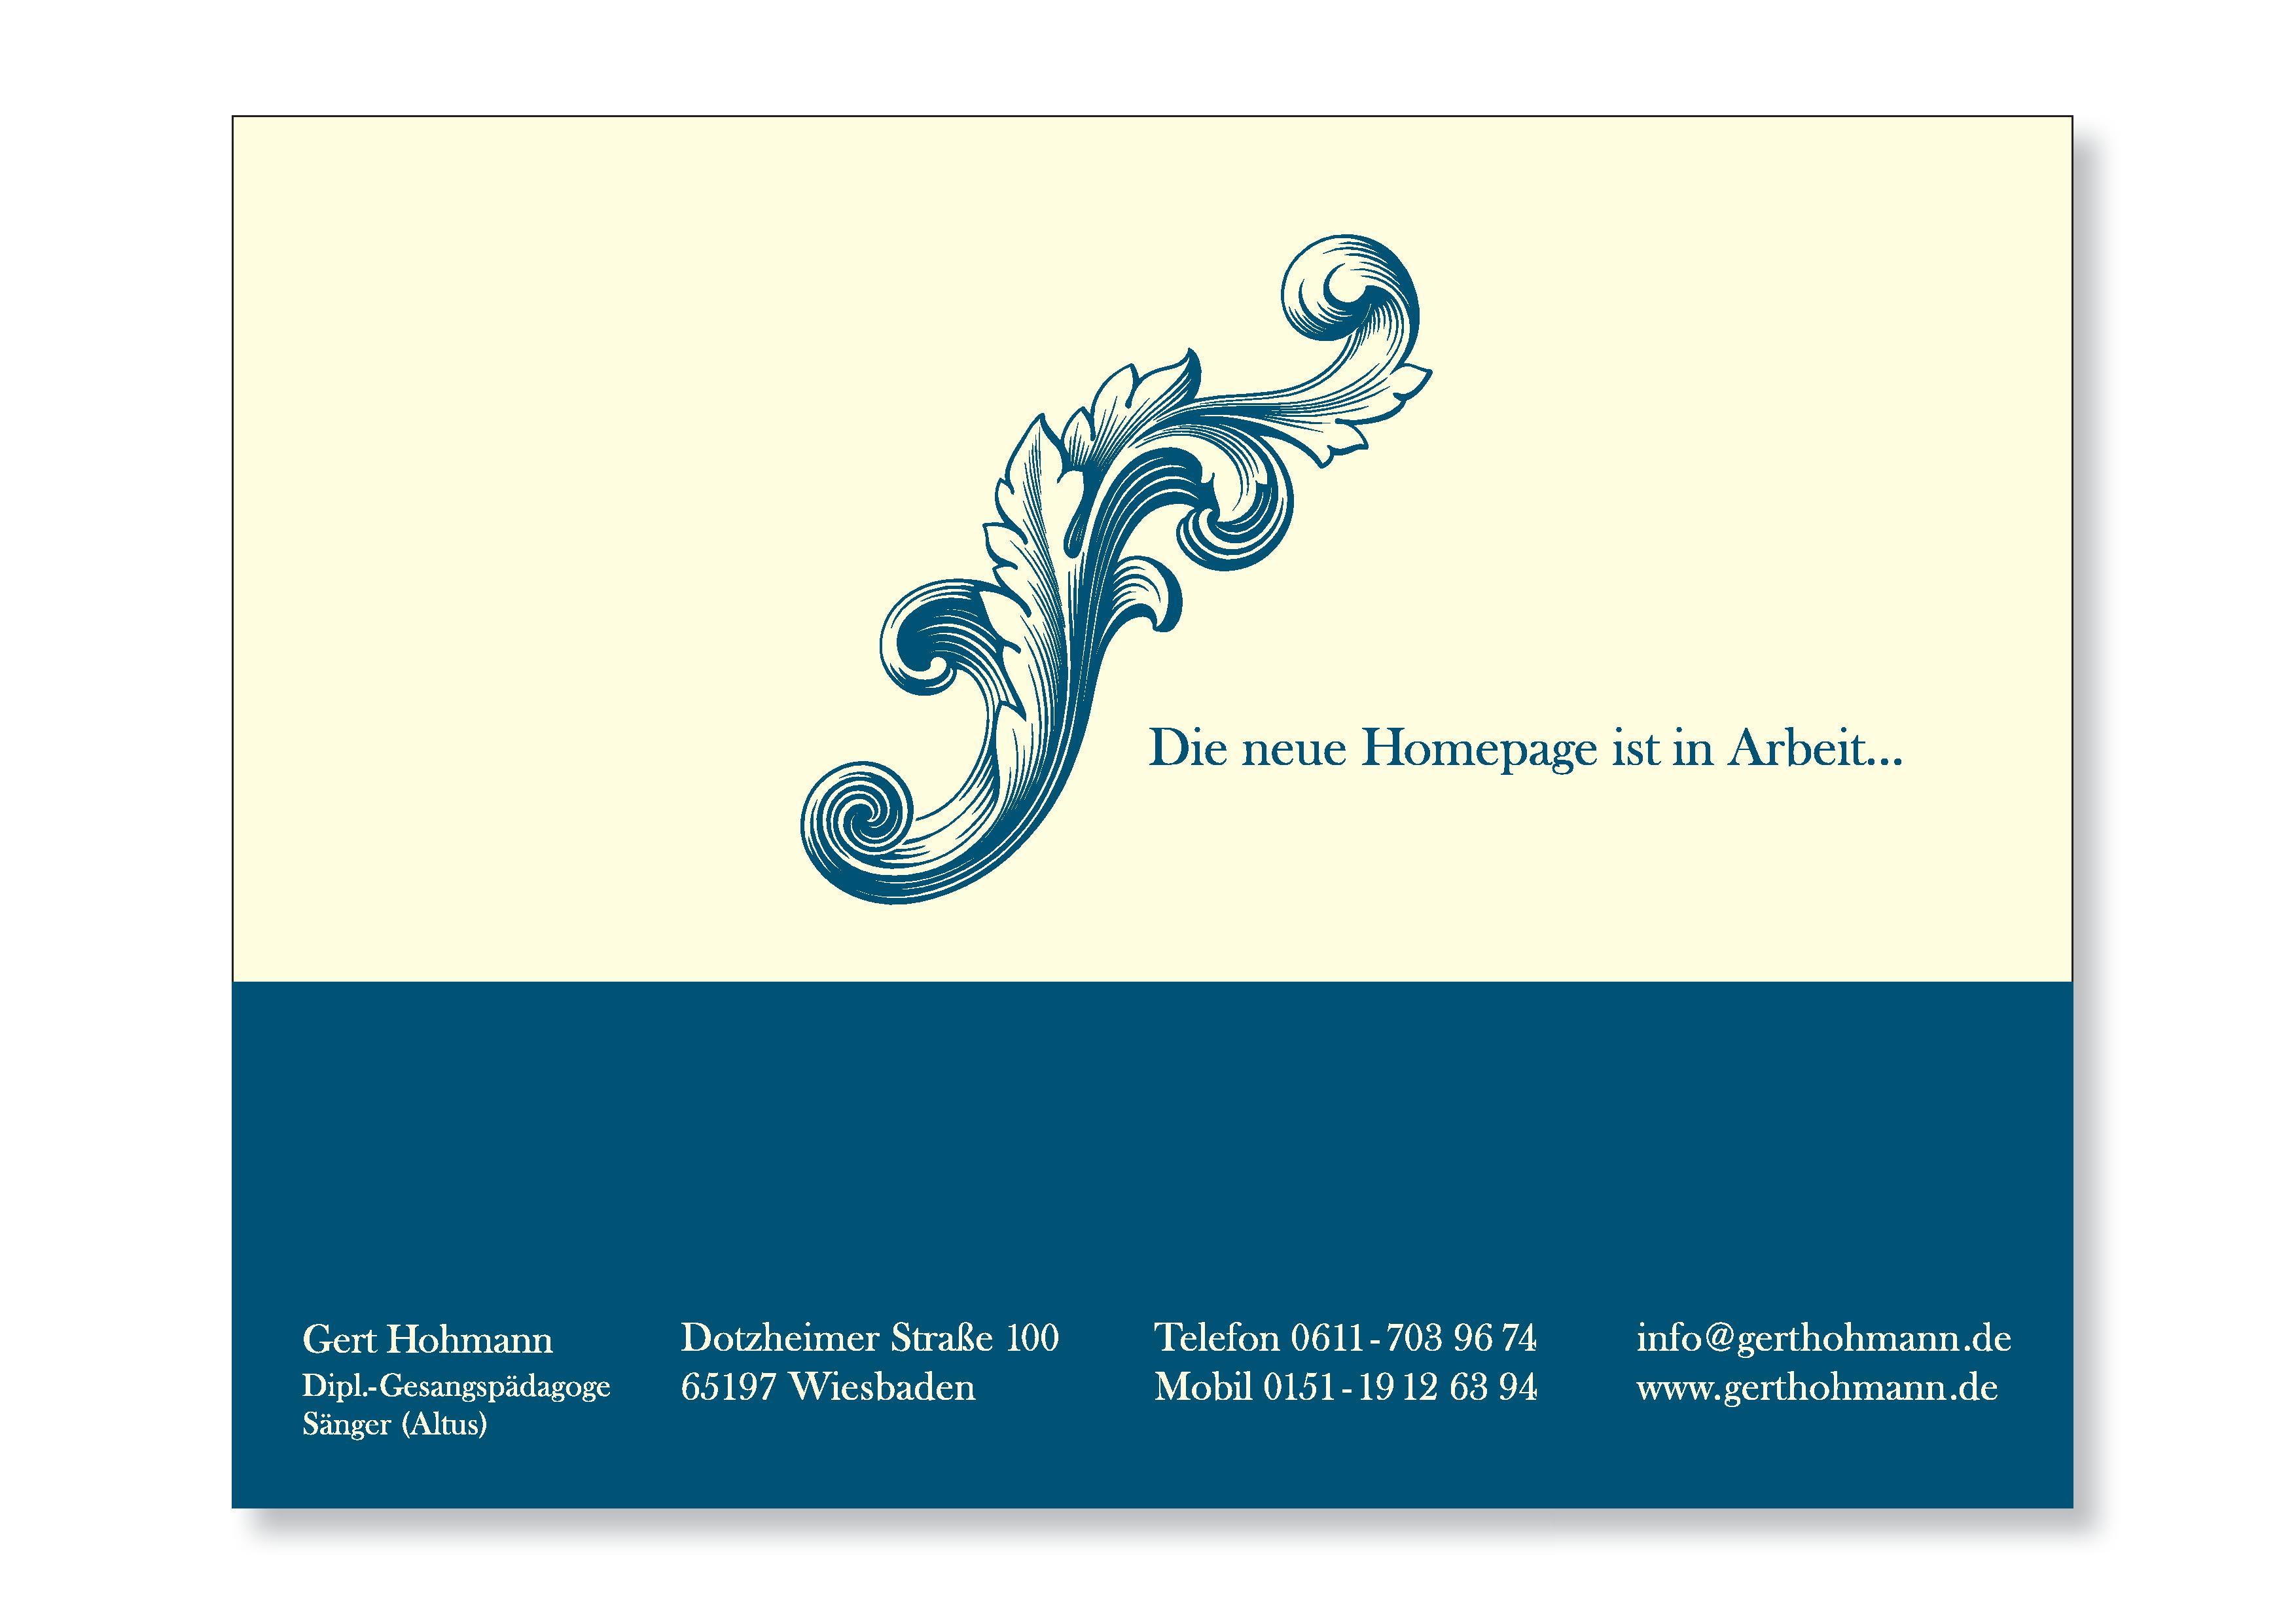 Gert Hohmann, Dotzheimer Strasse 100, 65197 Wiesbaden, info@gerthohmann.de